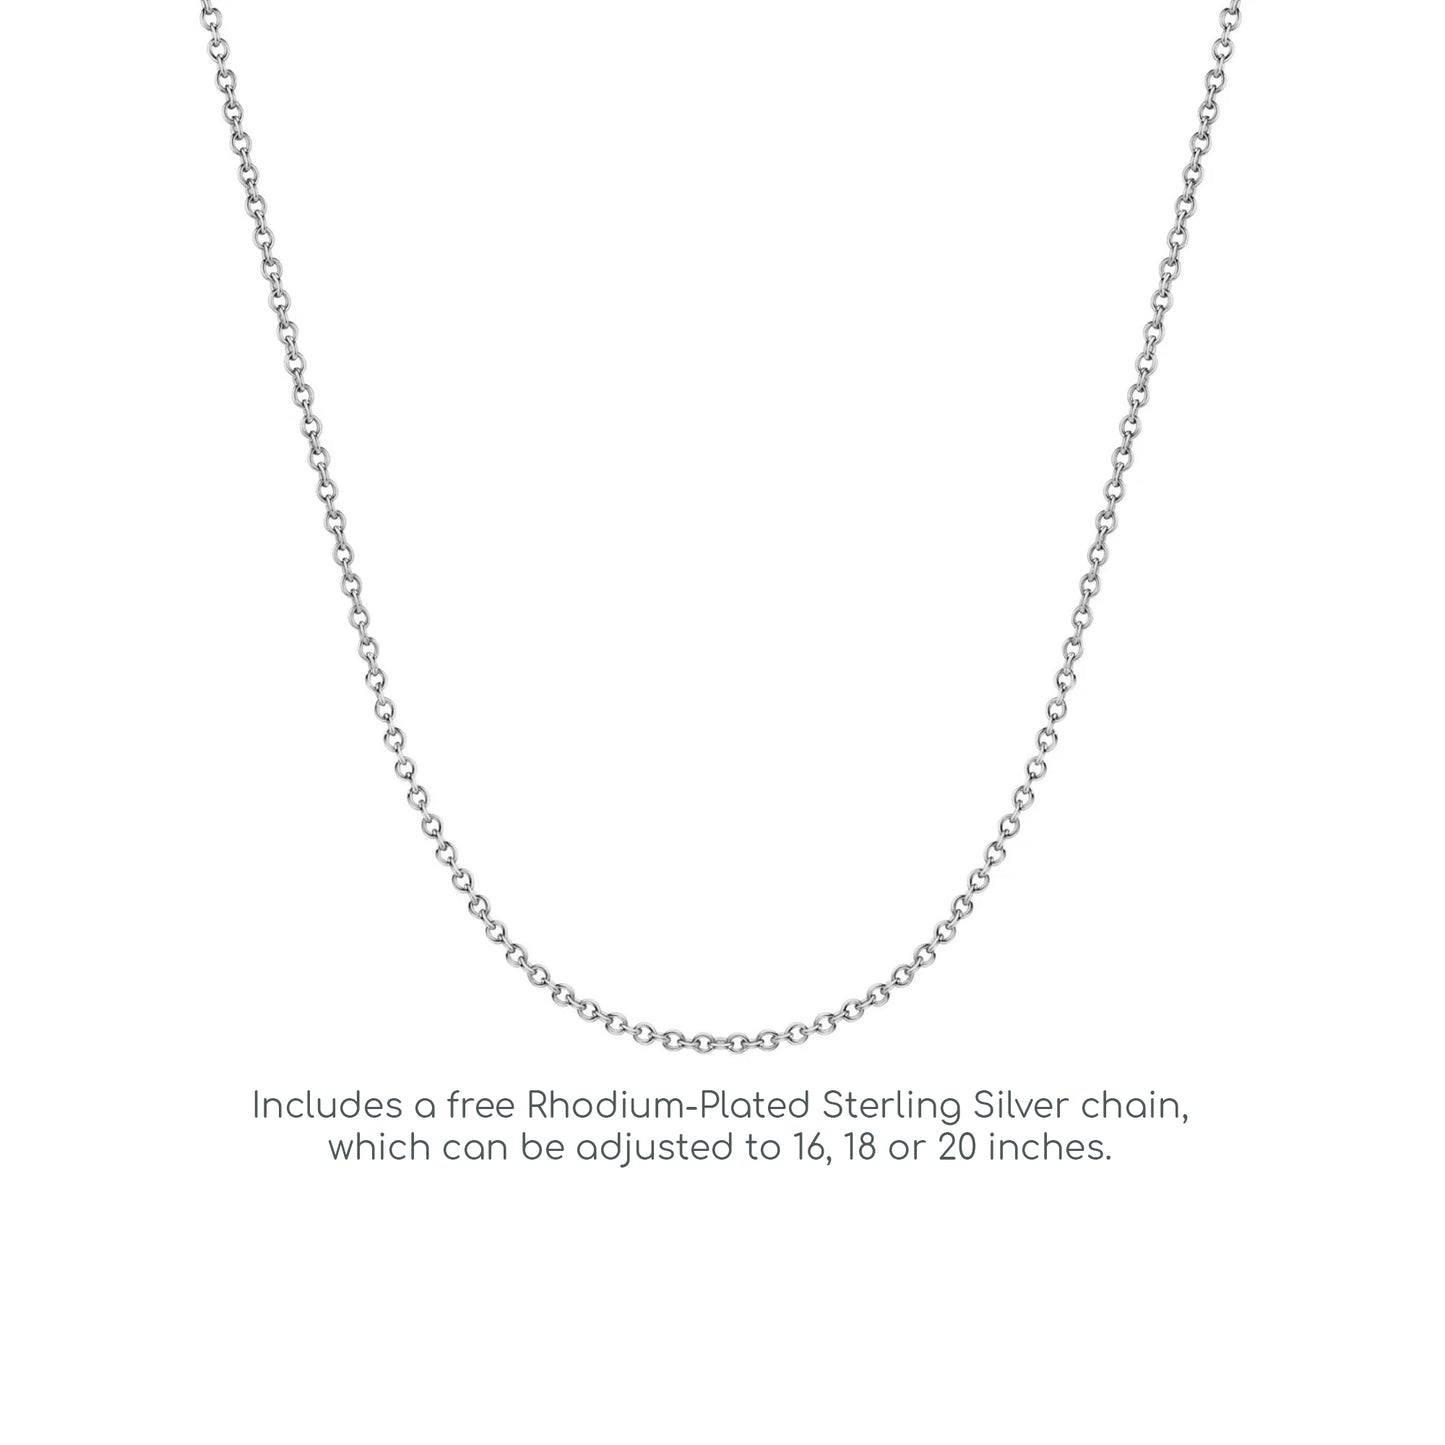 Silver  CZ Trilogy Drop Pendant Necklace 18 inch - GVP264